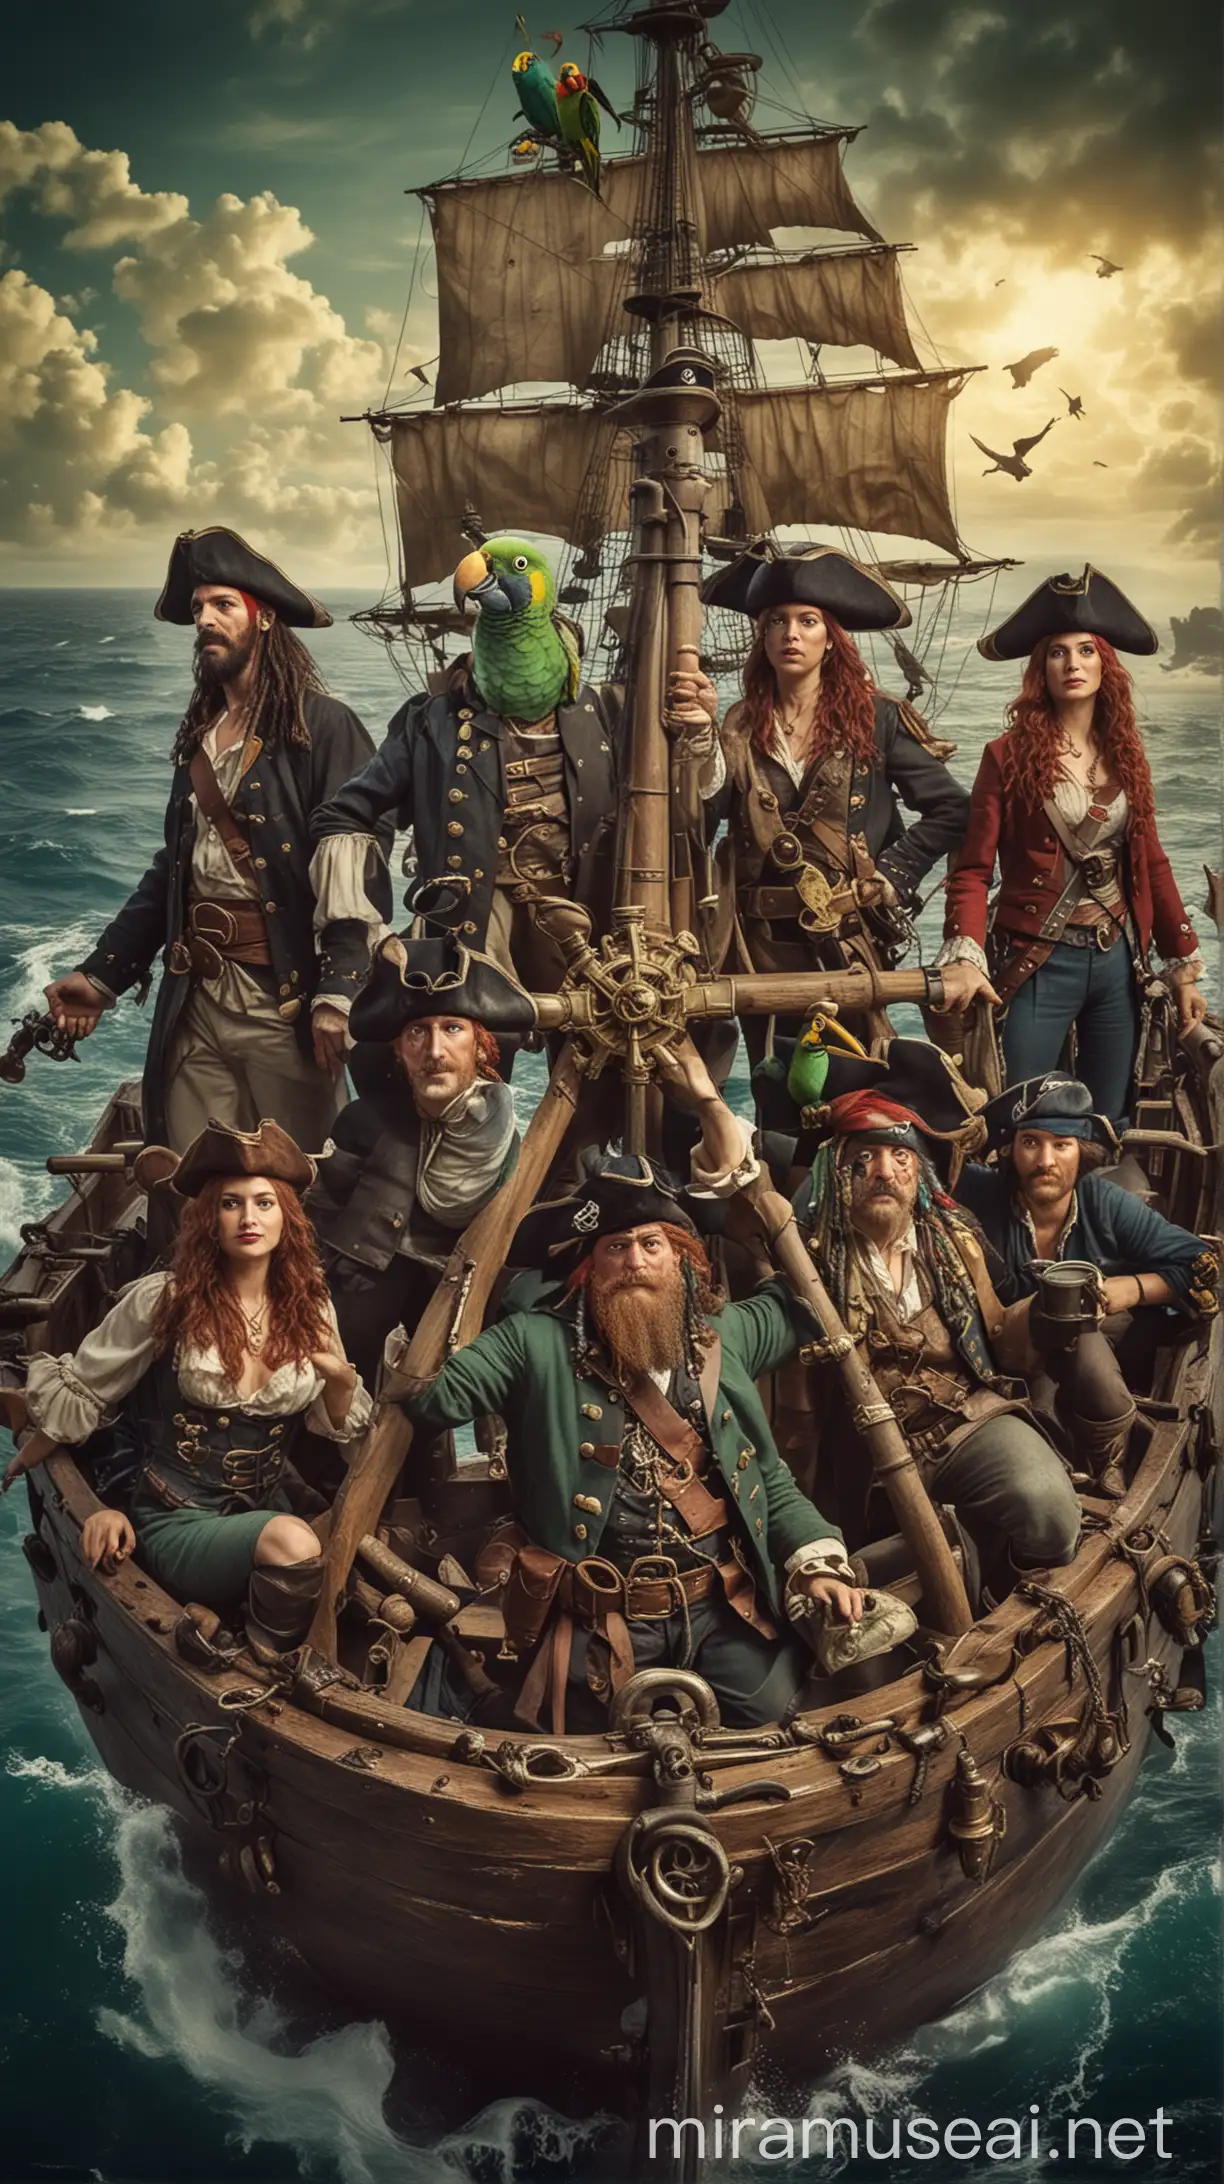 подставь этих людей в фото под пиратскую вселенную, капитаншы корабля, бинокль в руке, шапка треугольник, в море, на плече попугай